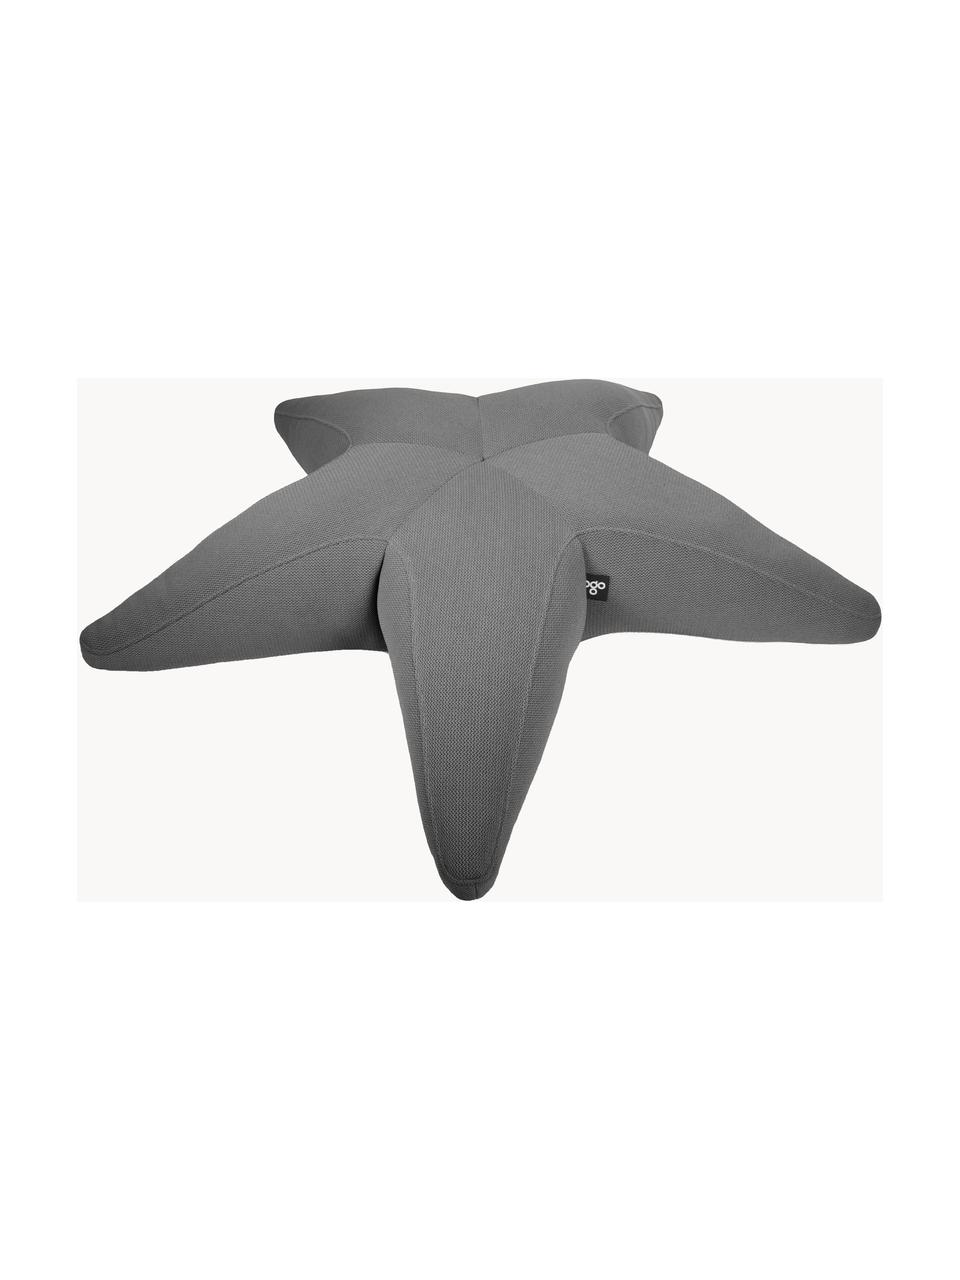 Velký exteriérový sedací vak Starfish, ručně vyrobený, Tmavě šedá, Š 145 cm, D 145 cm